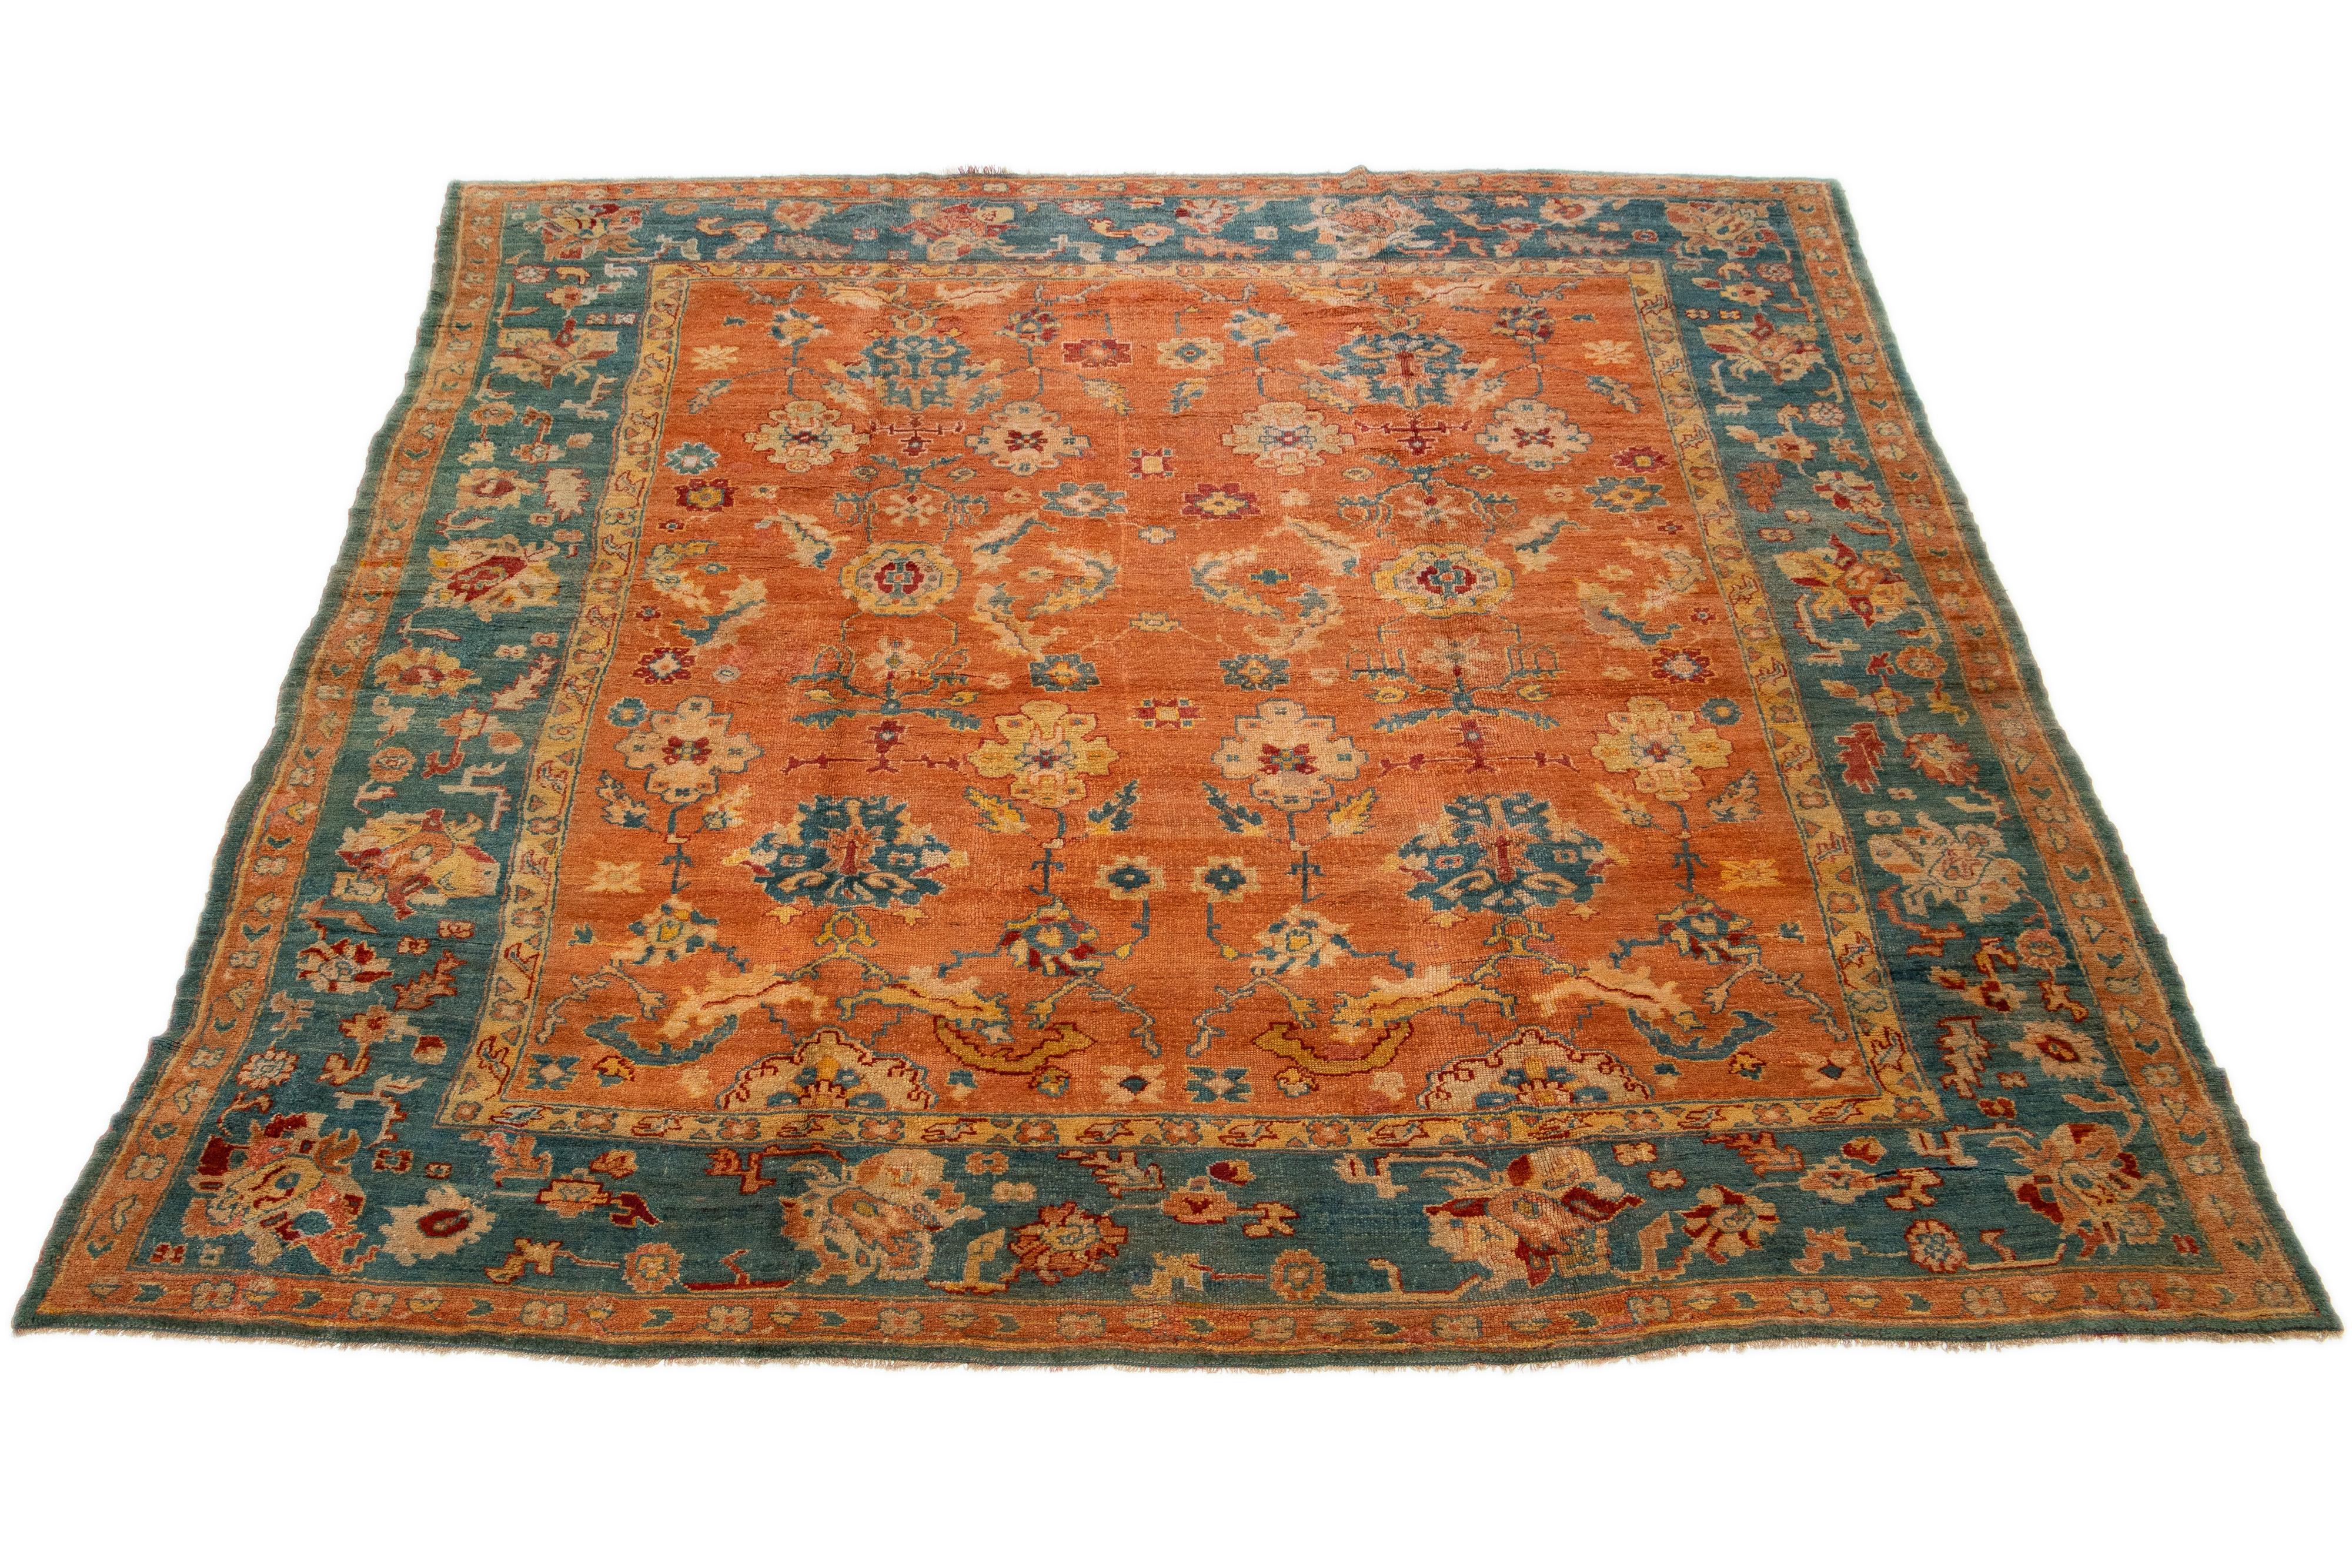 Ce tapis turc Oushak est vraiment unique en son genre. Il a été noué à la main de manière experte avec de la laine de première qualité et arbore un champ orange époustouflant. Le tapis est encadré d'une bordure bleue audacieuse et orné d'un vibrant